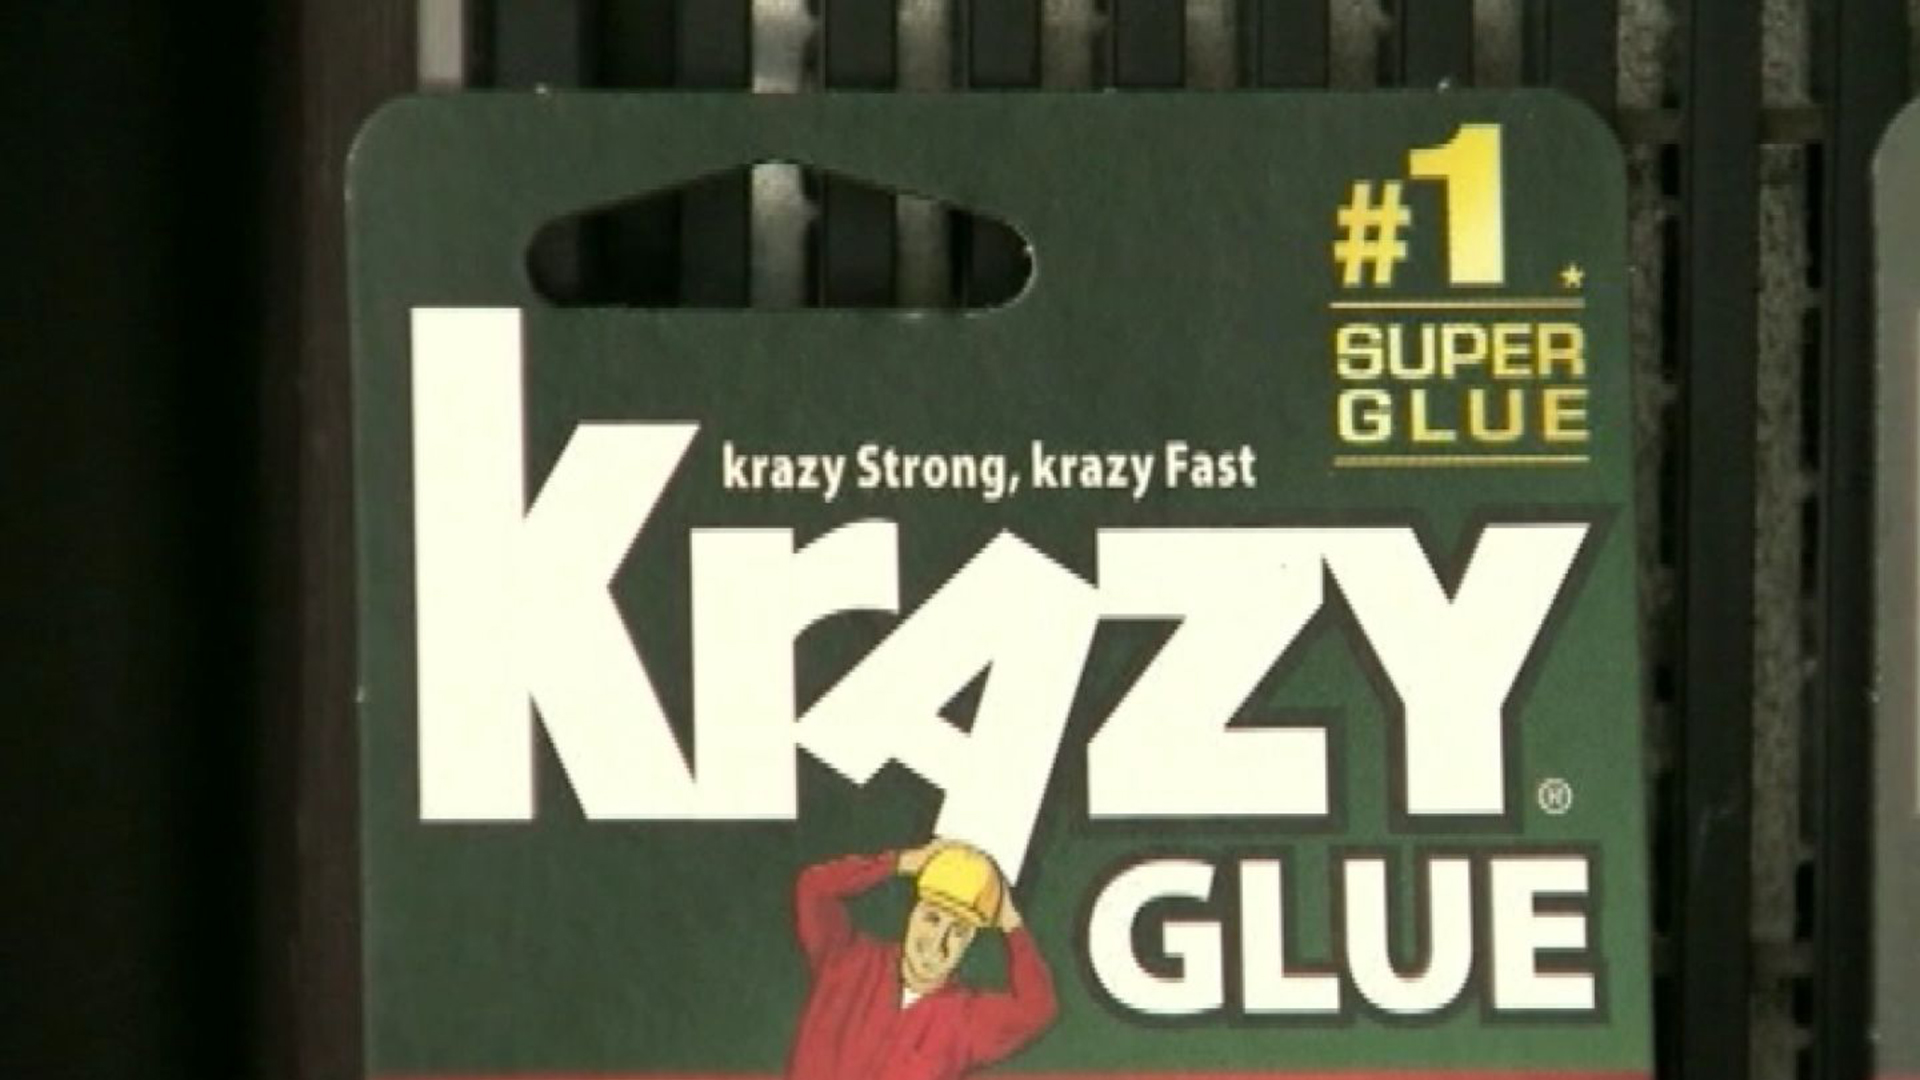 Krazy Glue faces false advertising law suit